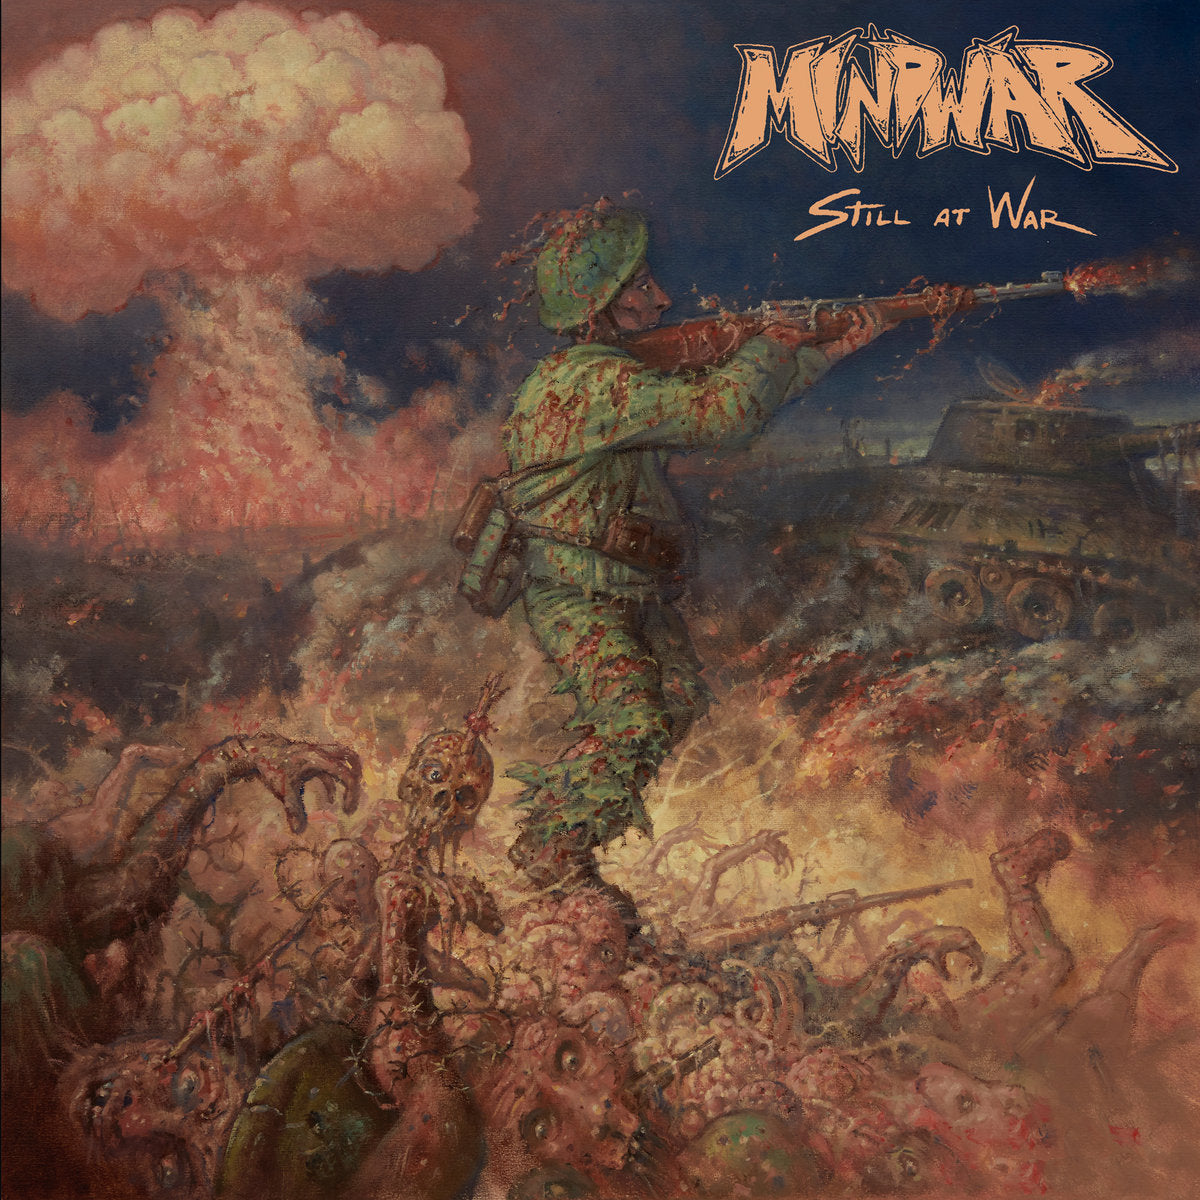 Mindwar "Still At War" 12" Vinyl